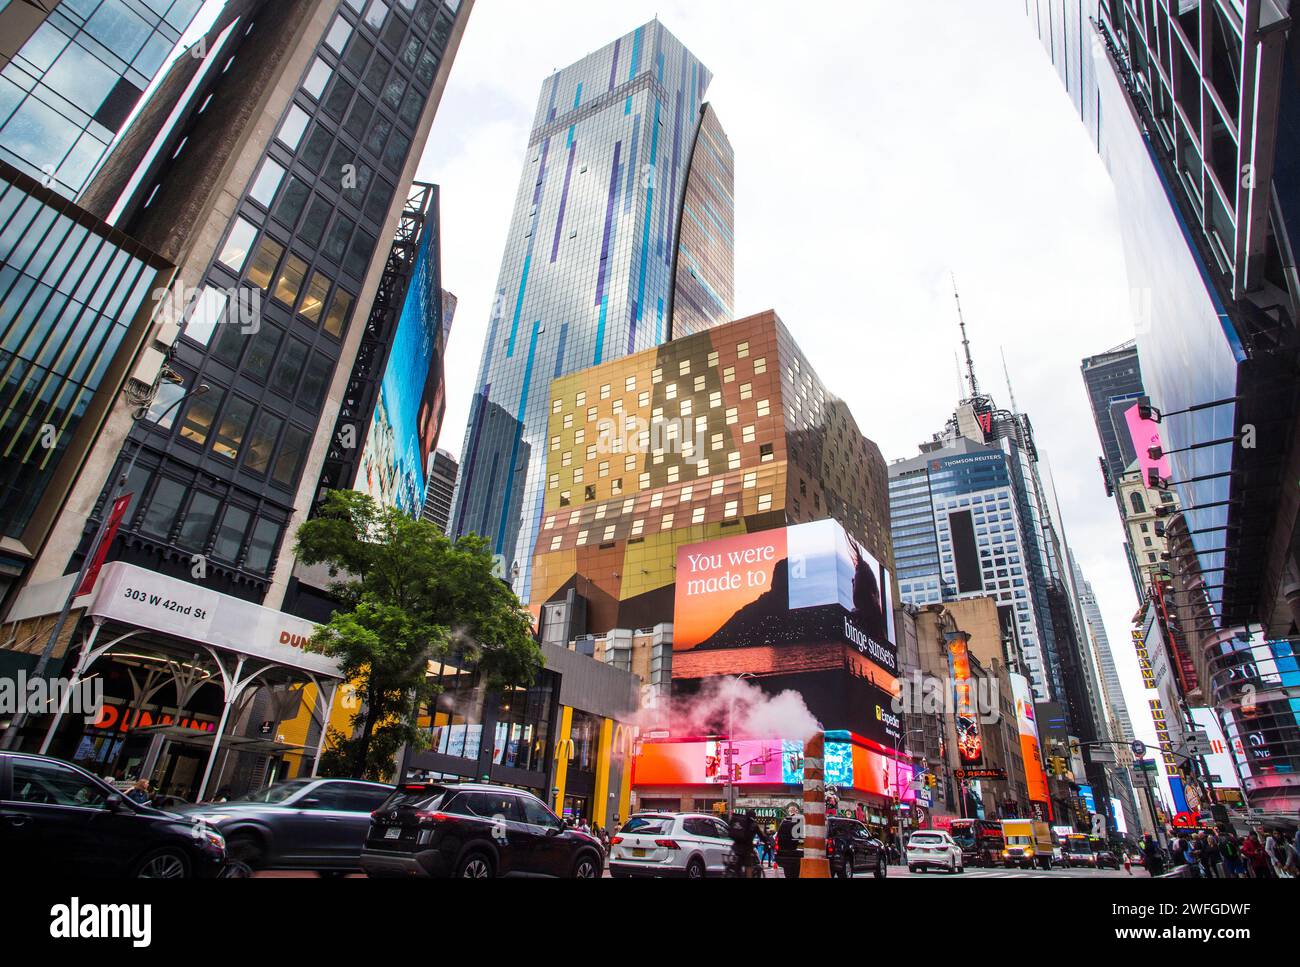 New York : panneaux publicitaires à Manhattan Banque D'Images